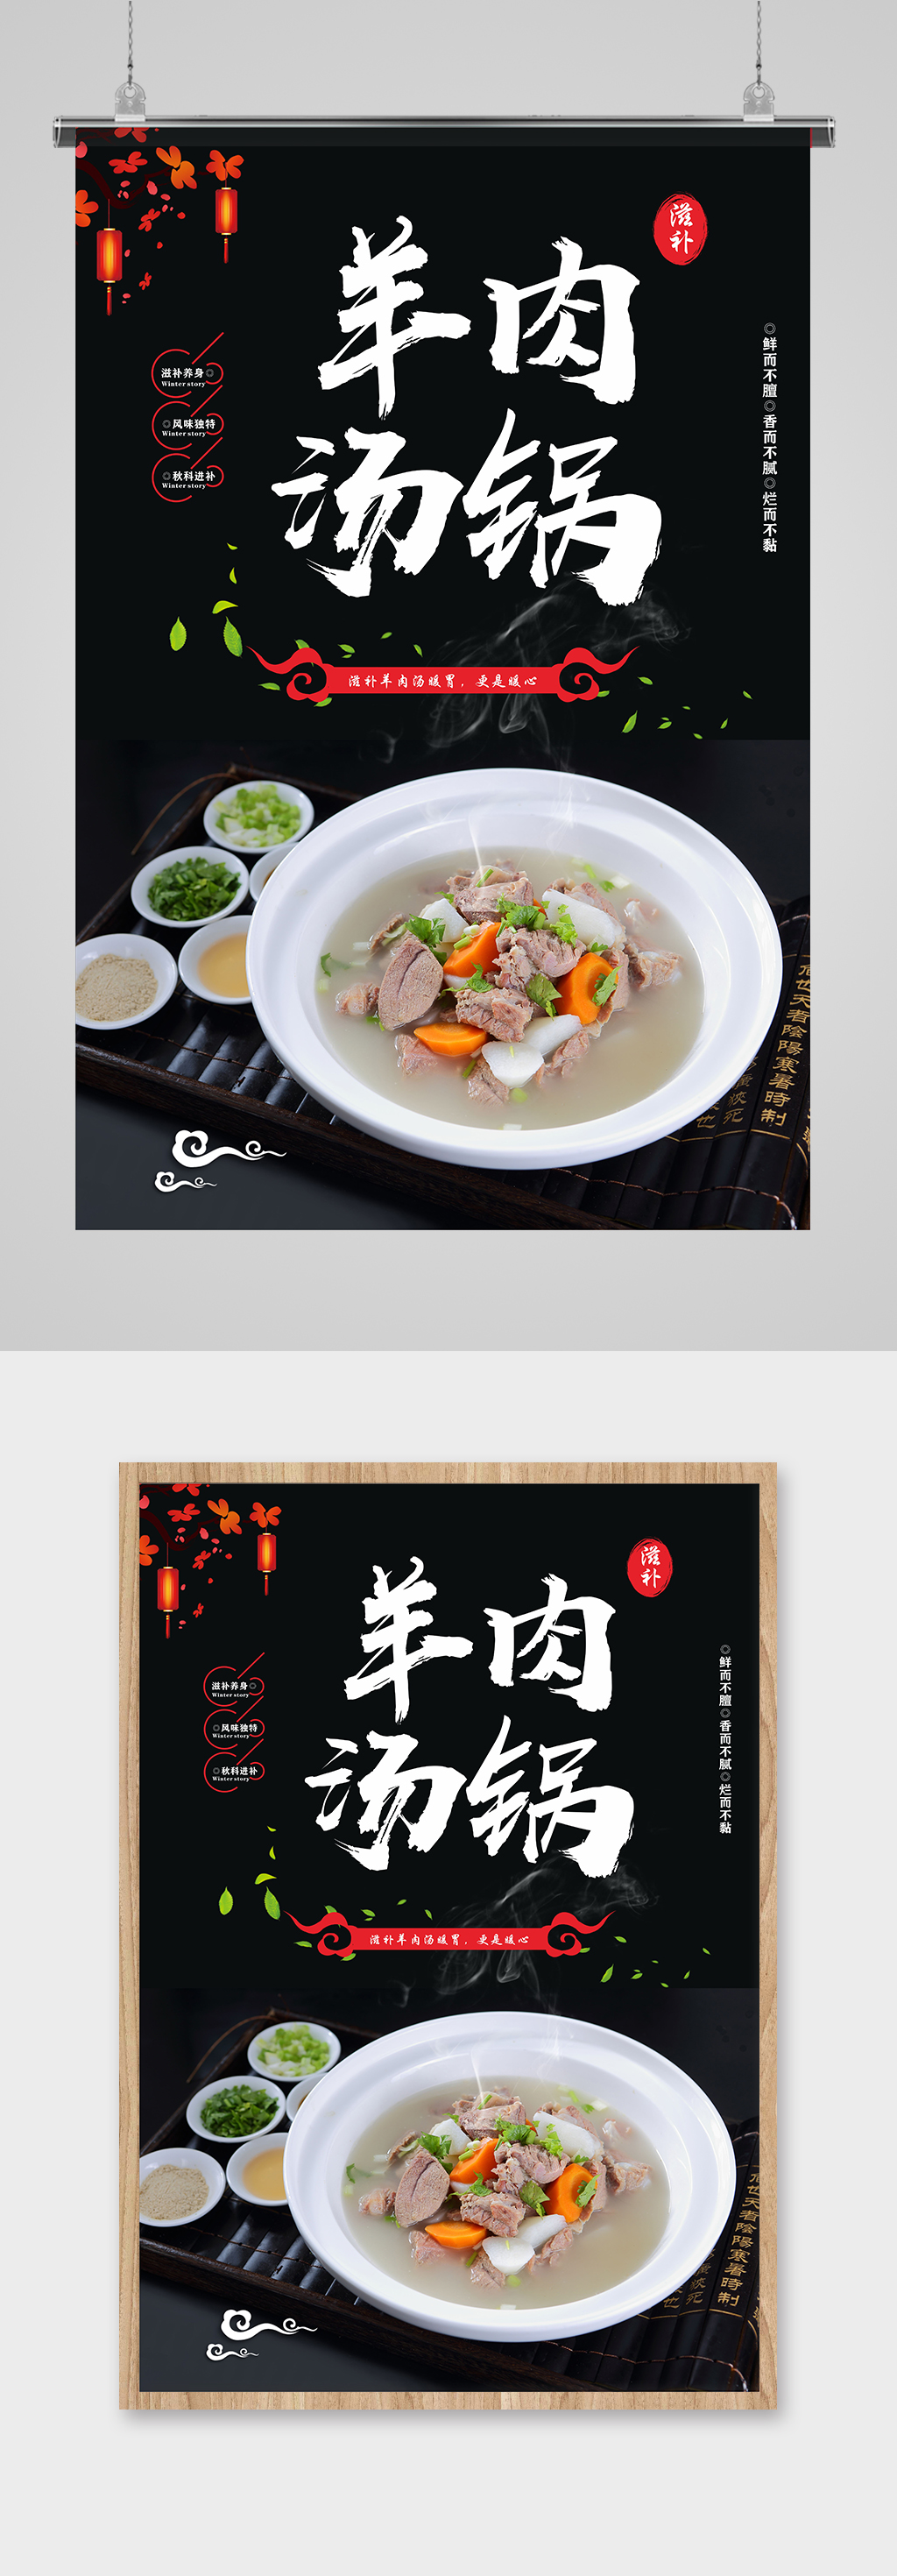 中国风羊肉汤美食海报